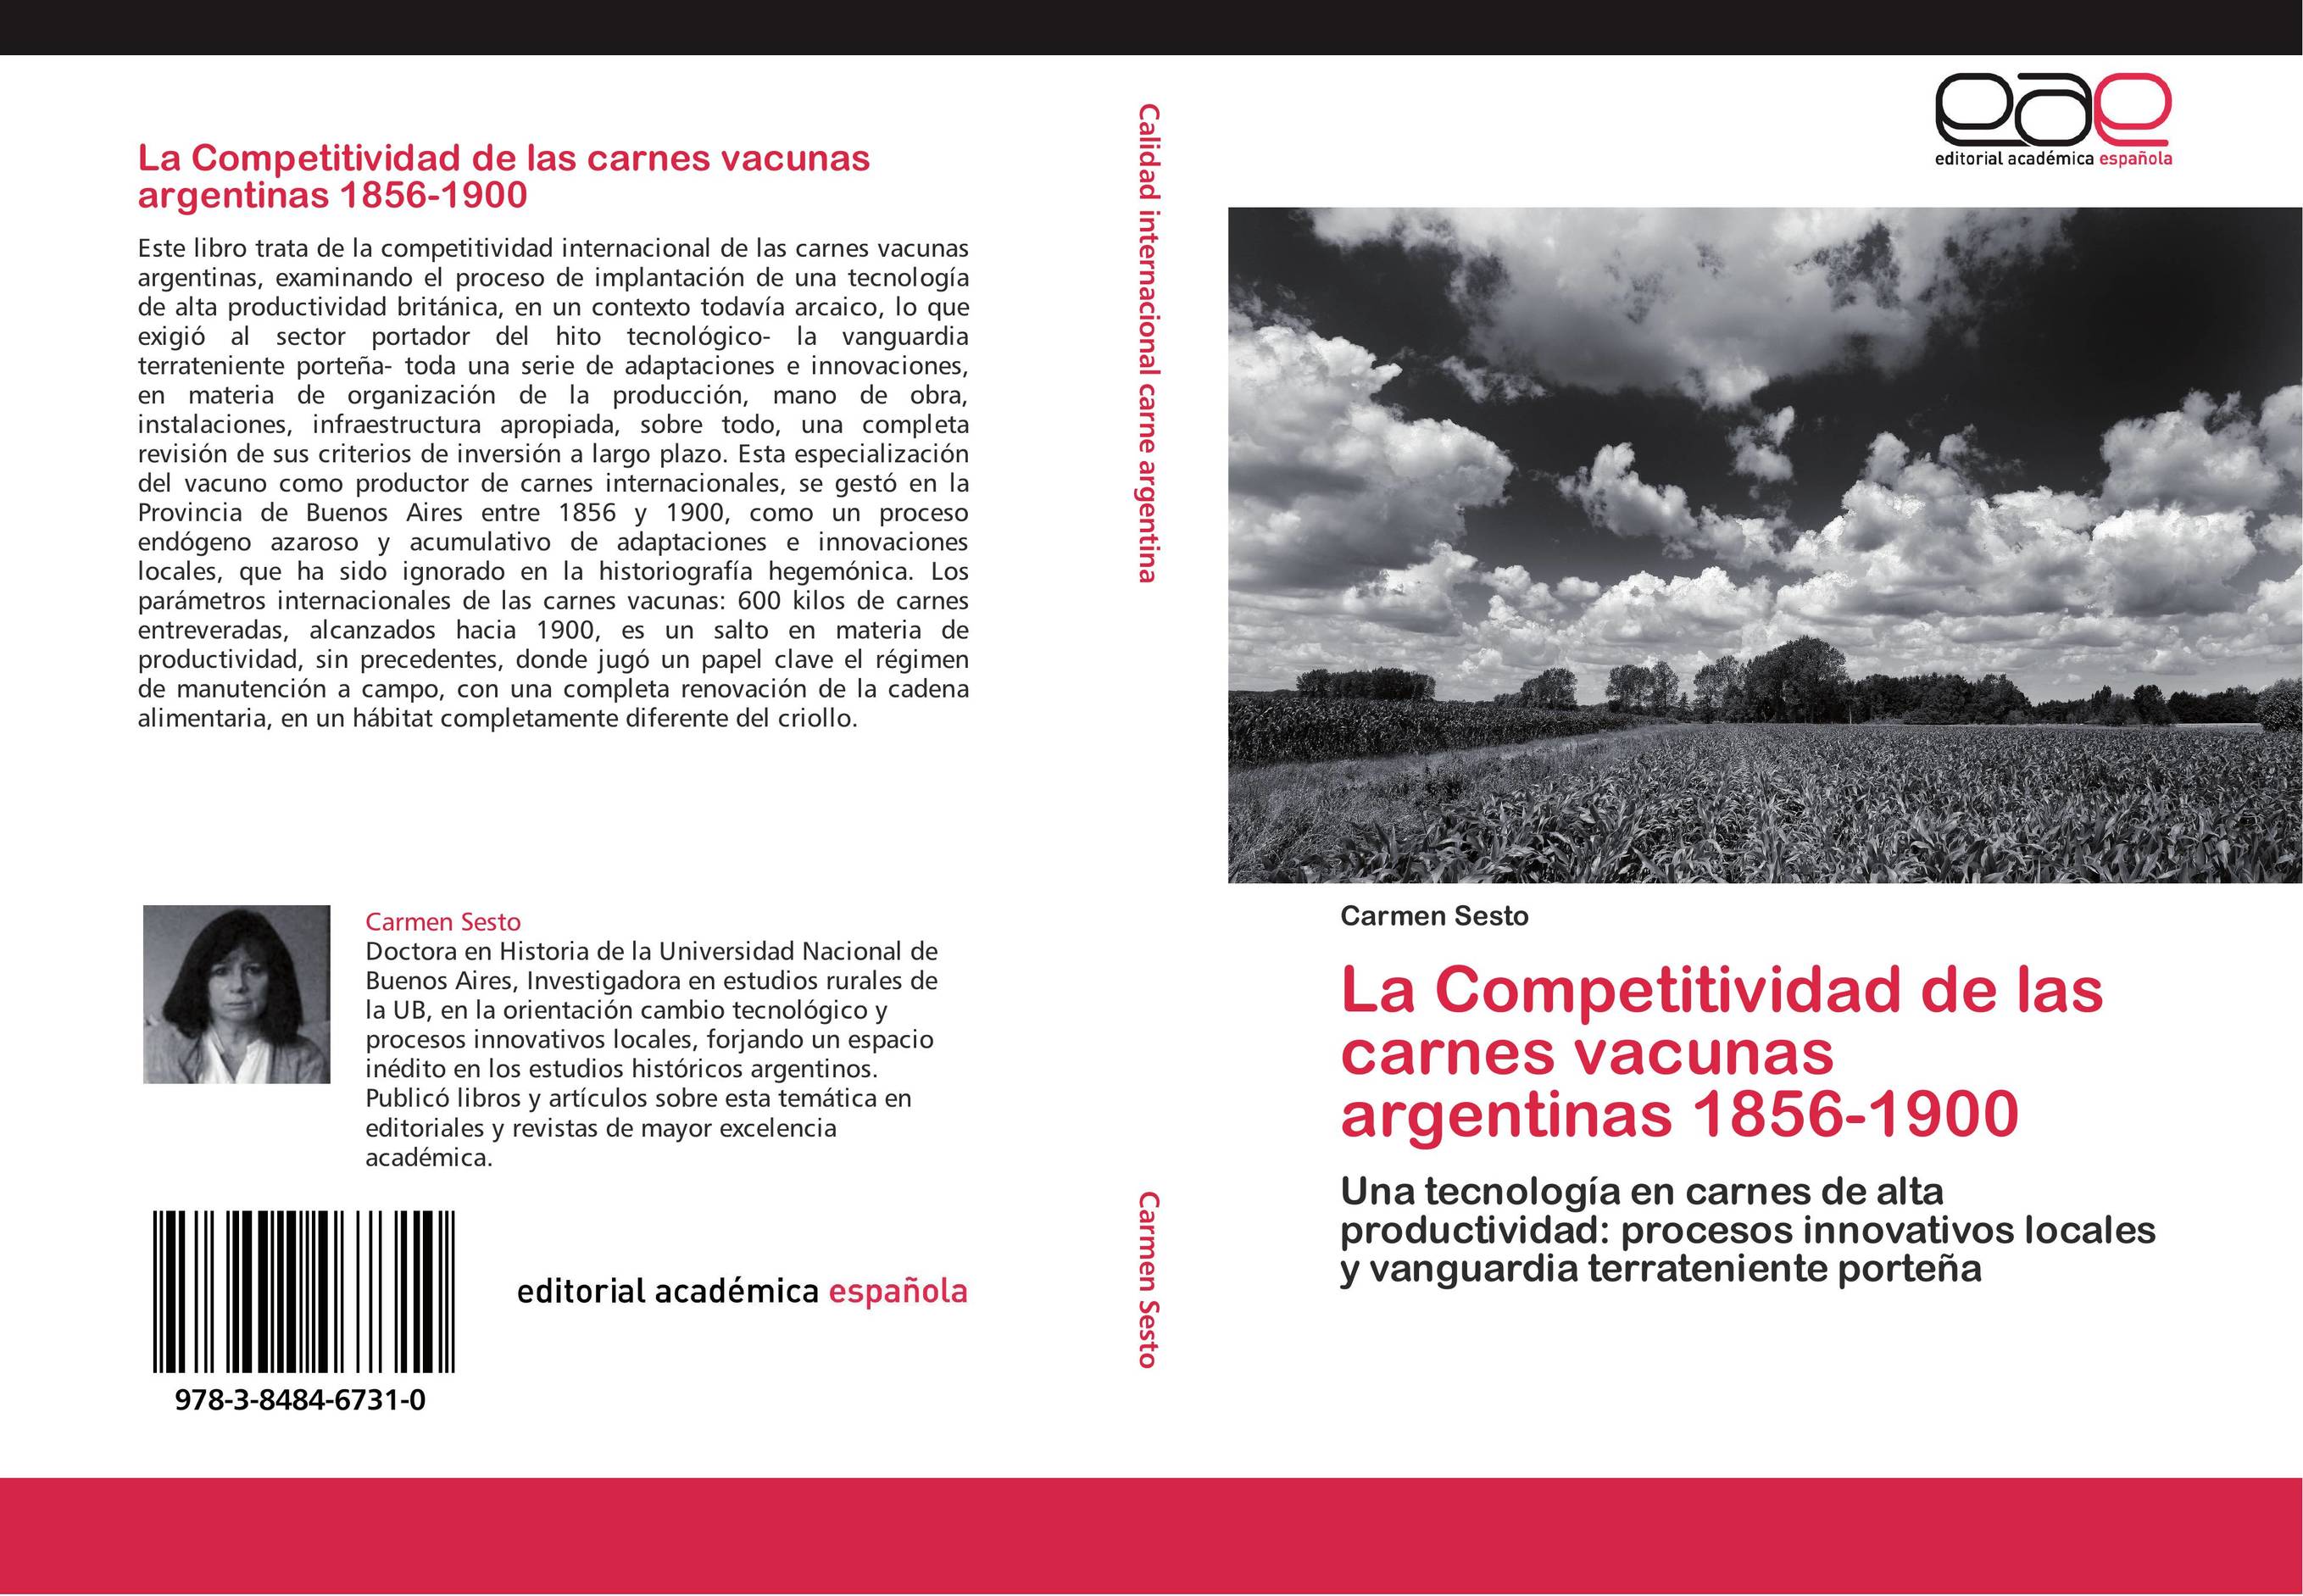 La Competitividad de las carnes vacunas argentinas 1856-1900